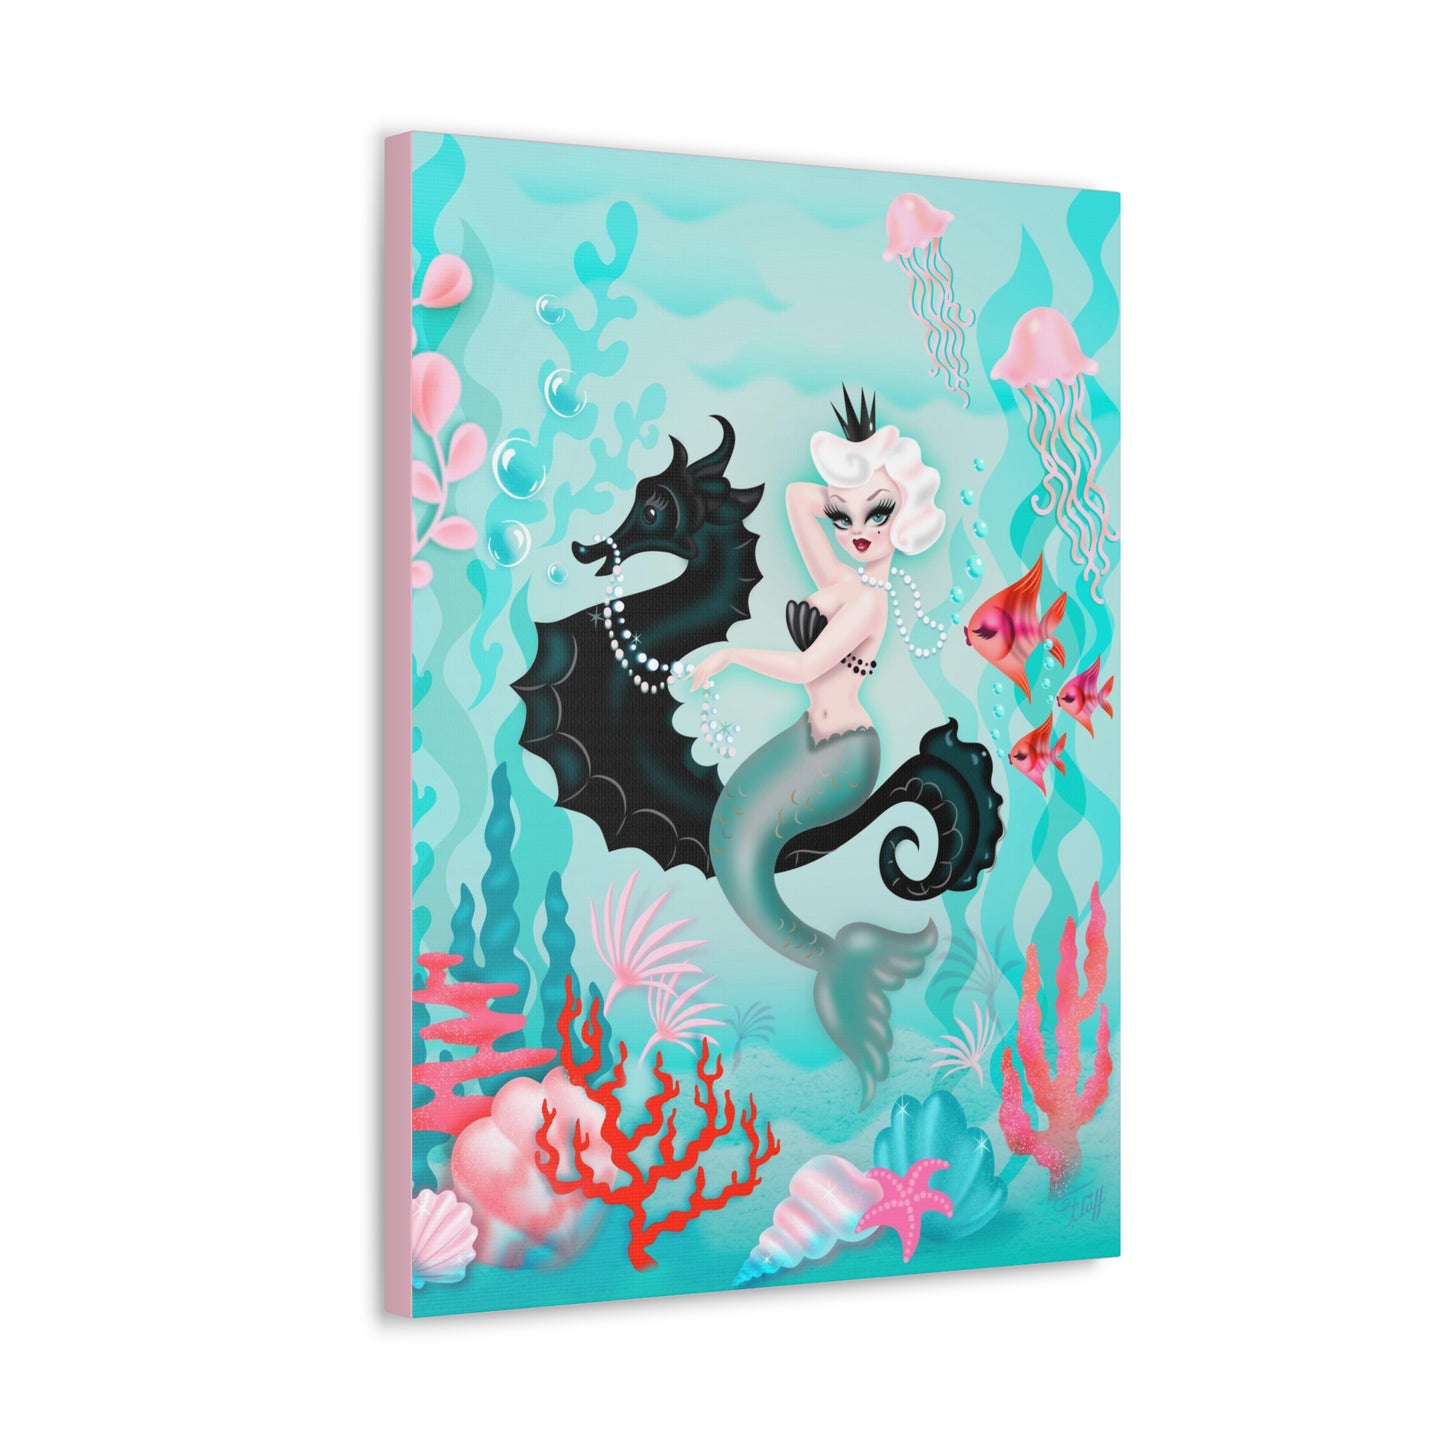 Perlette Mermaid • Canvas Gallery Wrap